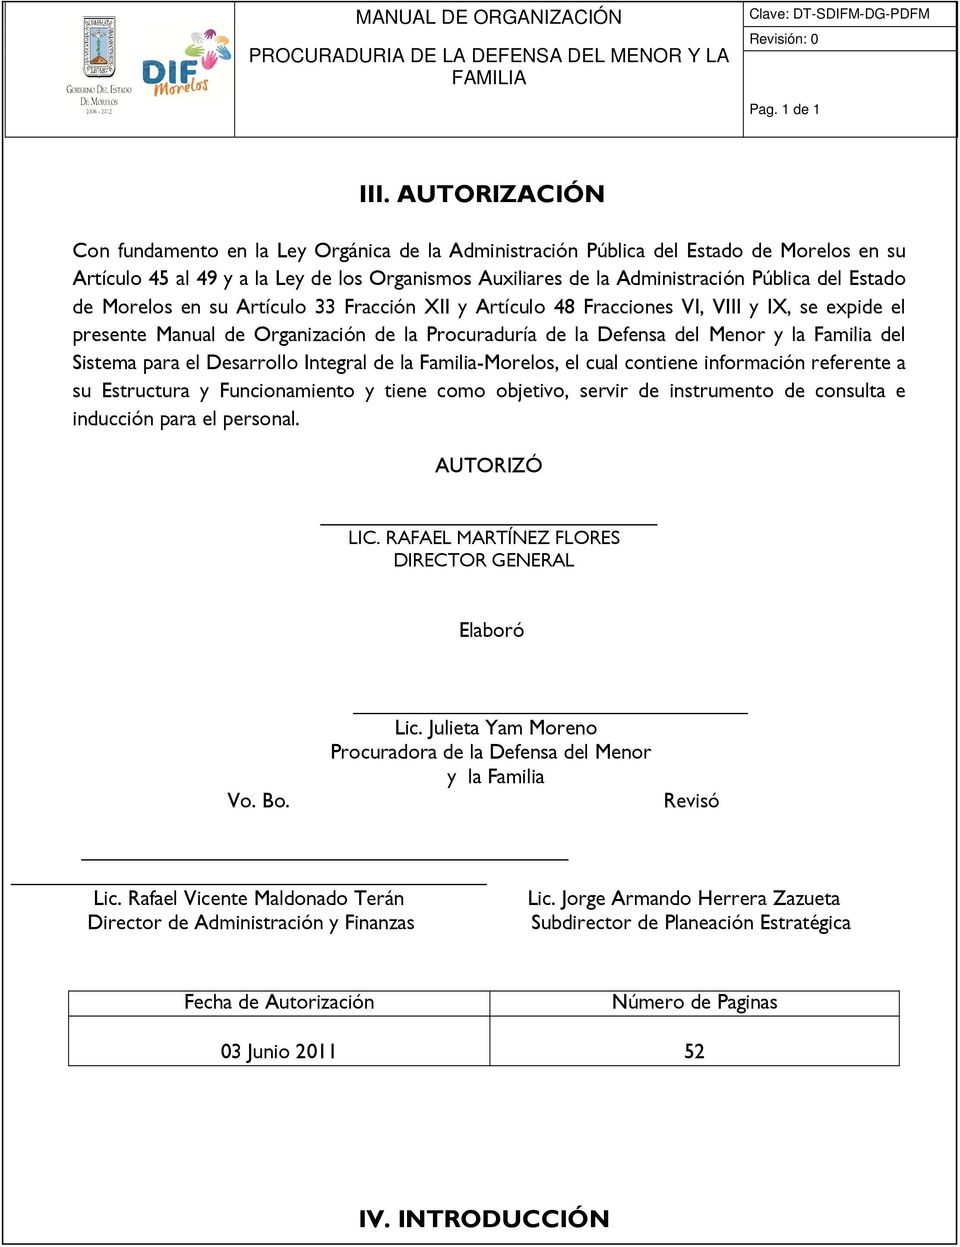 Estado de Morelos en su Artículo 33 Fracción XII y Artículo 48 Fracciones VI, VIII y IX, se expide el presente Manual de Organización de la Procuraduría de la Defensa del Menor y la Familia del